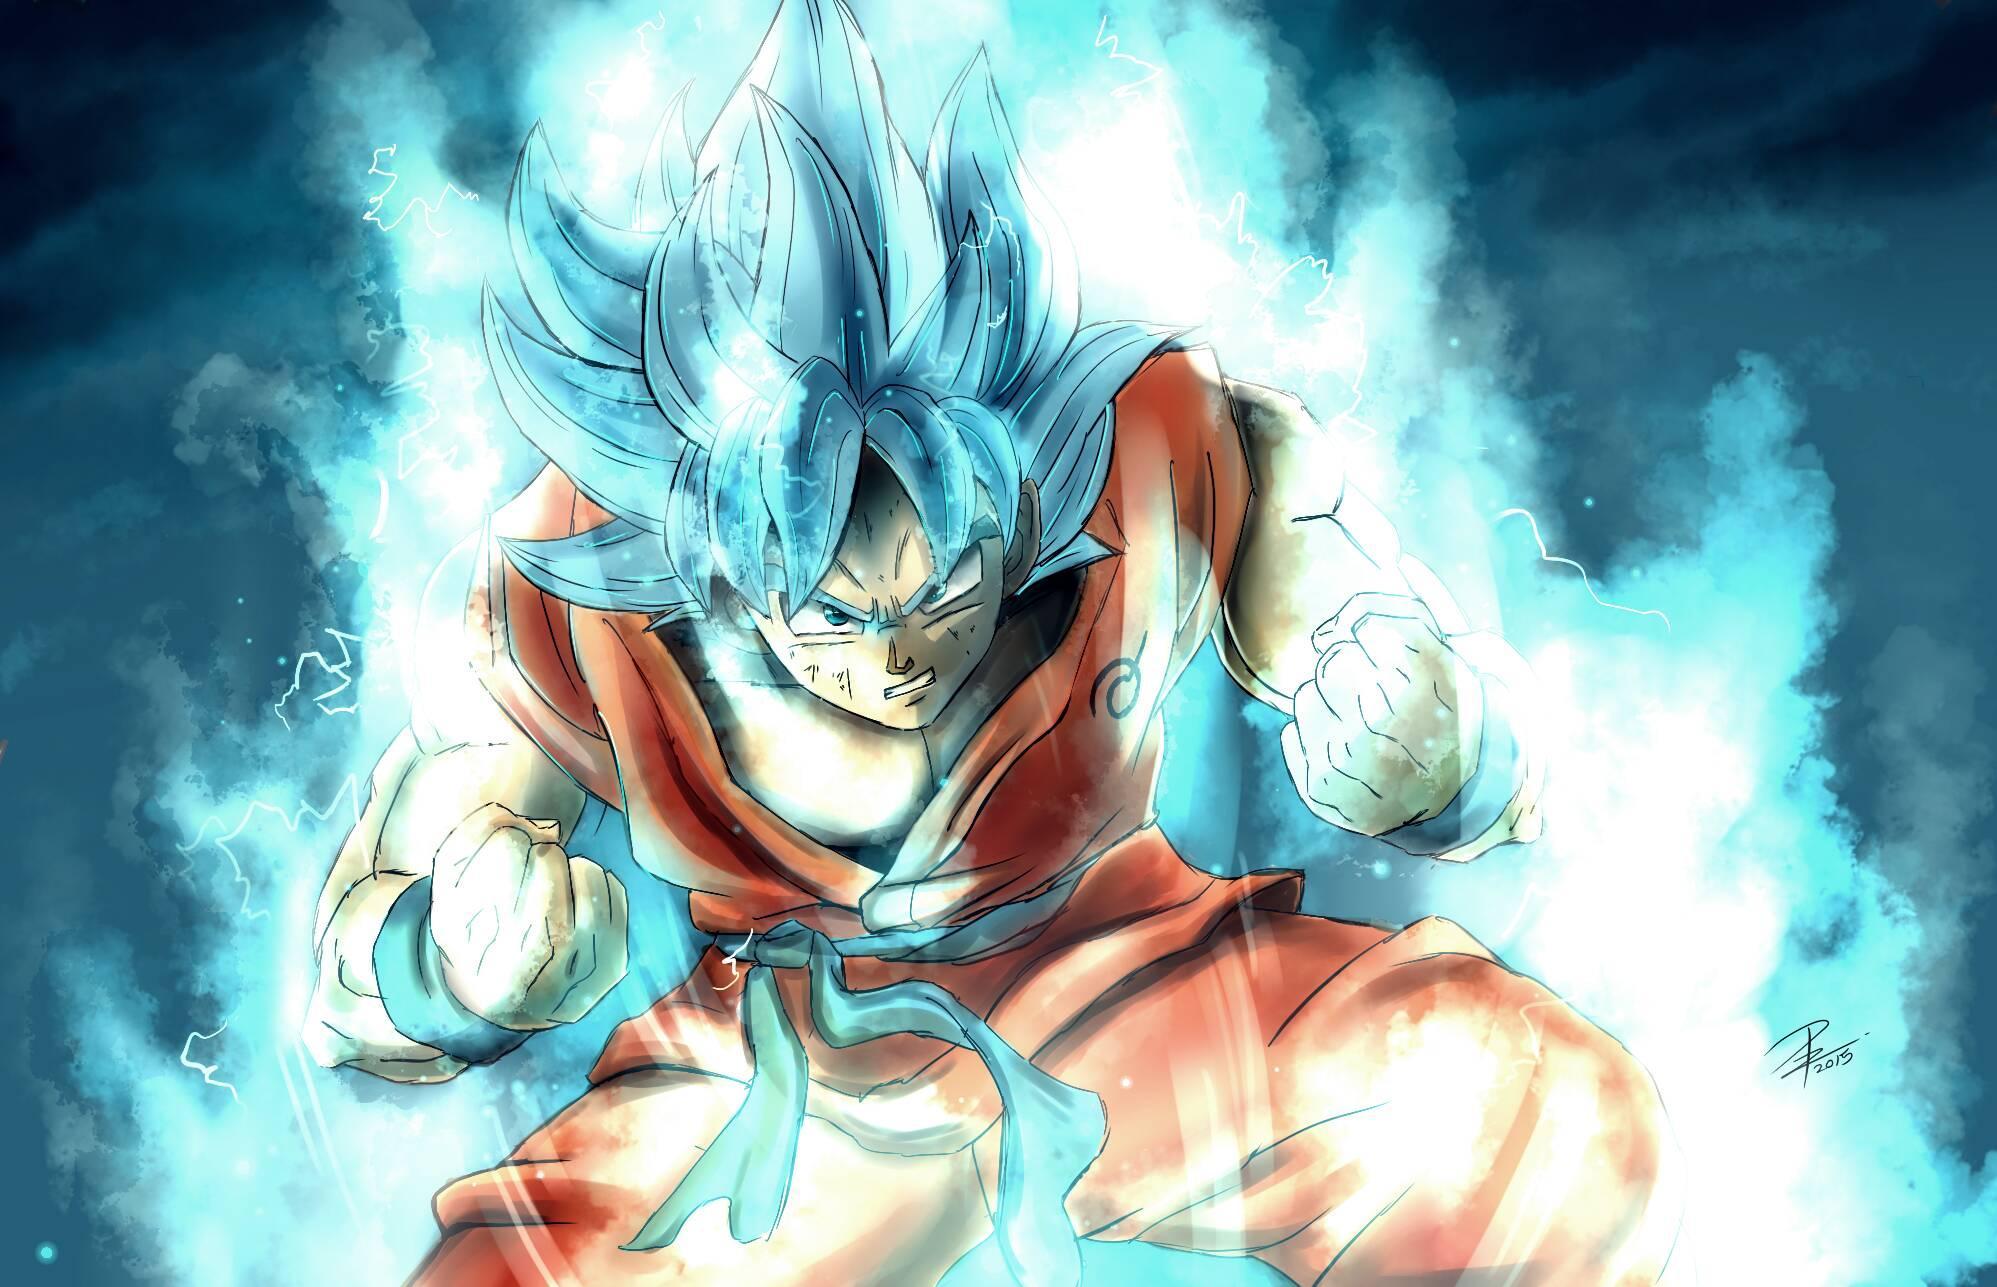 Những hình ảnh về Goku sẽ khiến bạn cảm thấy phấn khích và ngất ngây với sức mạnh phi thường của anh hùng người Saiyan này. Với những họa tiết tuyệt đẹp và chất lượng hình ảnh HD, hình nền Goku Art Wallpaper HD sẽ làm hài lòng các fan hâm mộ anime đích thực.